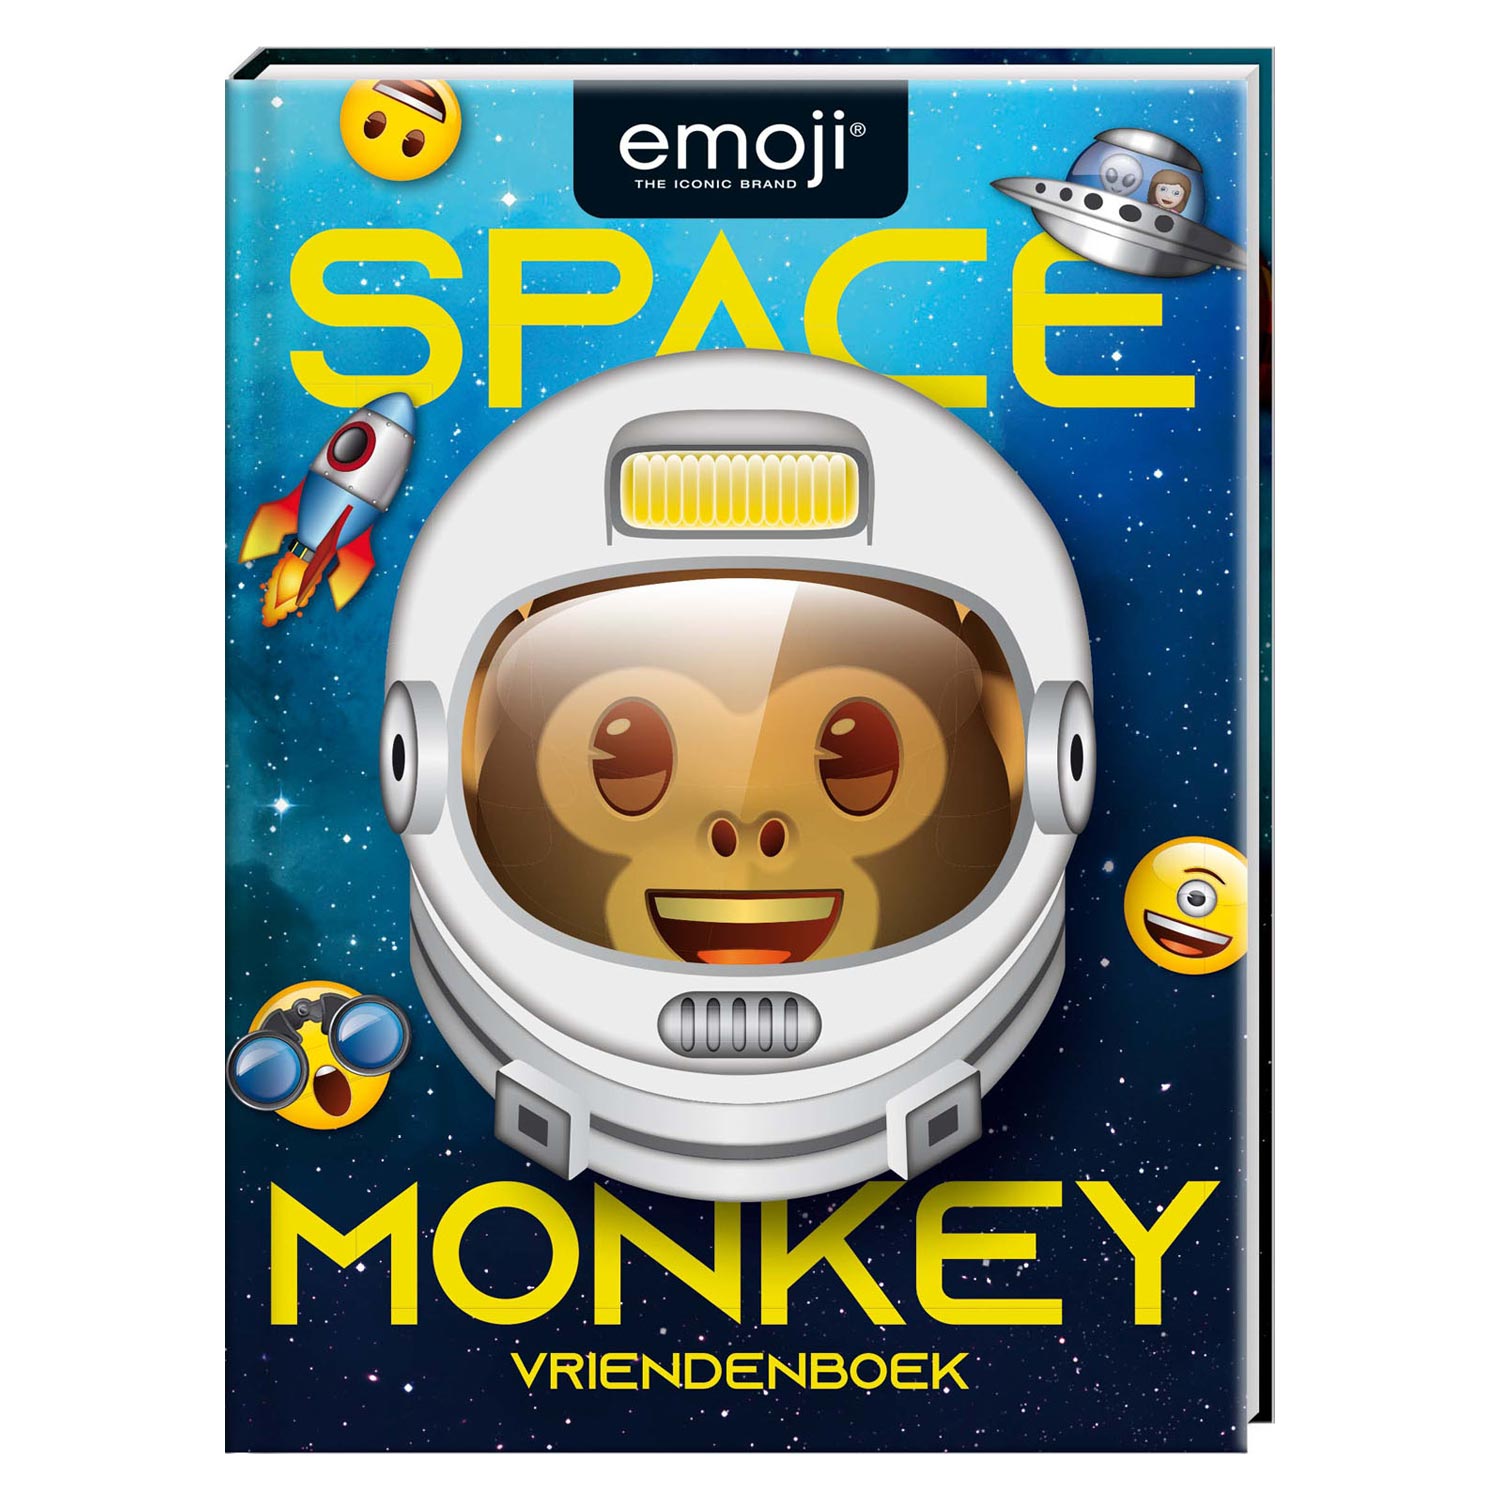 Vriendenboek Emoji Space Monkey